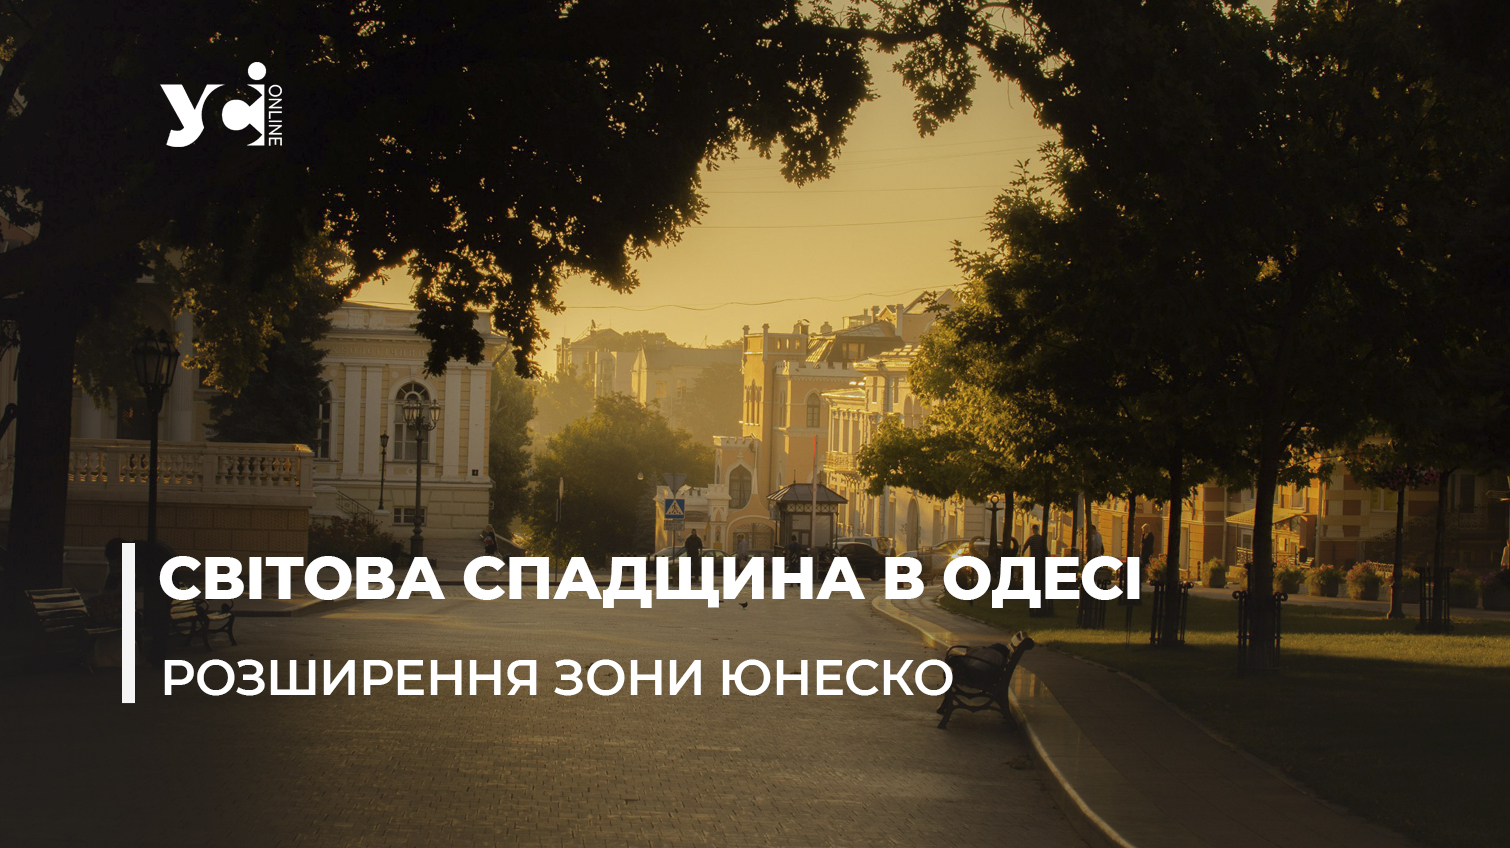 В Одесі будуть розширювати охоронну зону ЮНЕСКО: є два варіанти «фото»